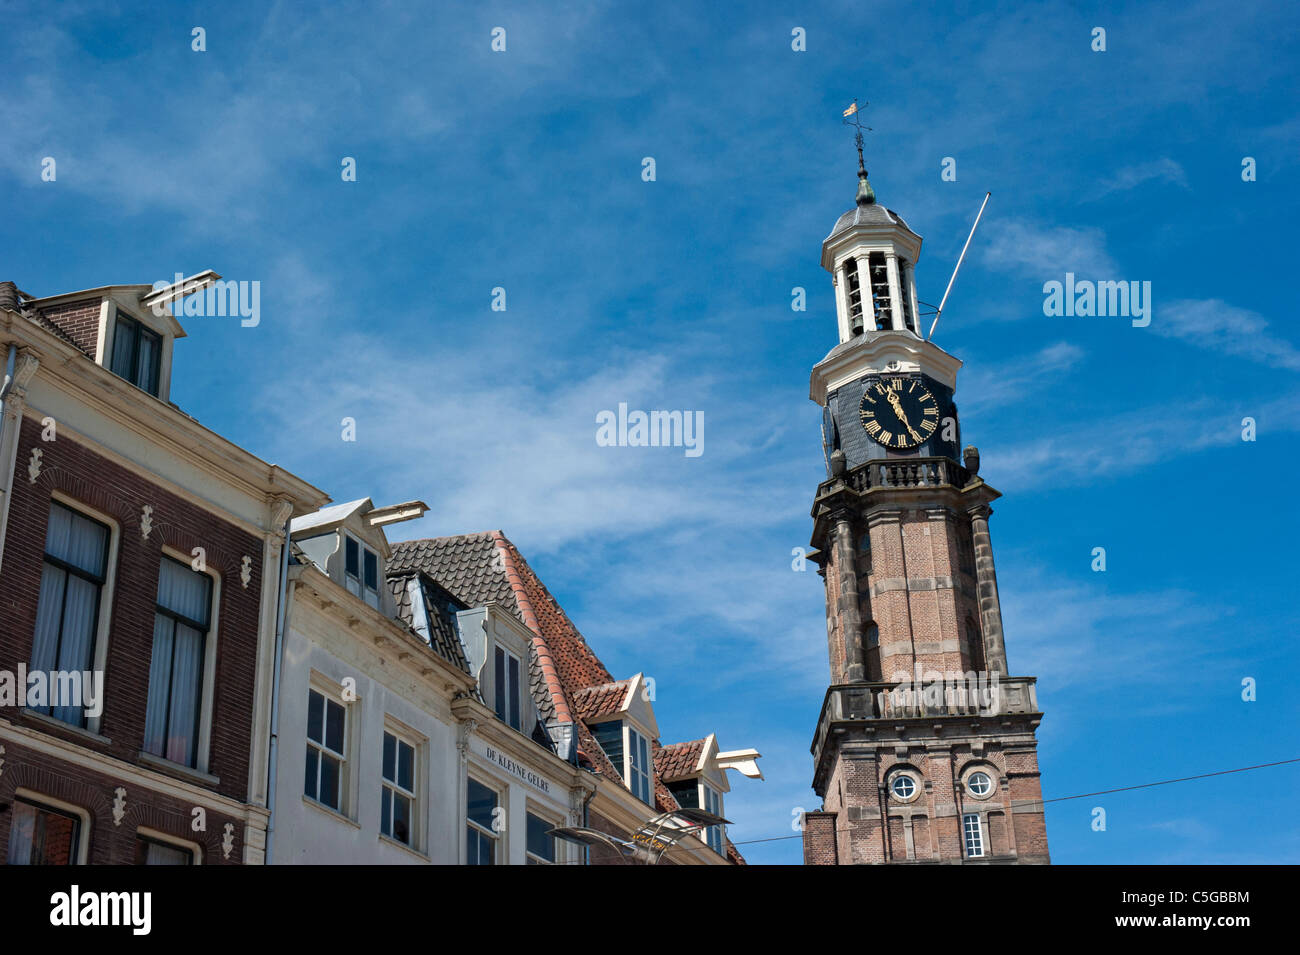 Wijnhuistoren in Zutphen, Netherlands Stock Photo